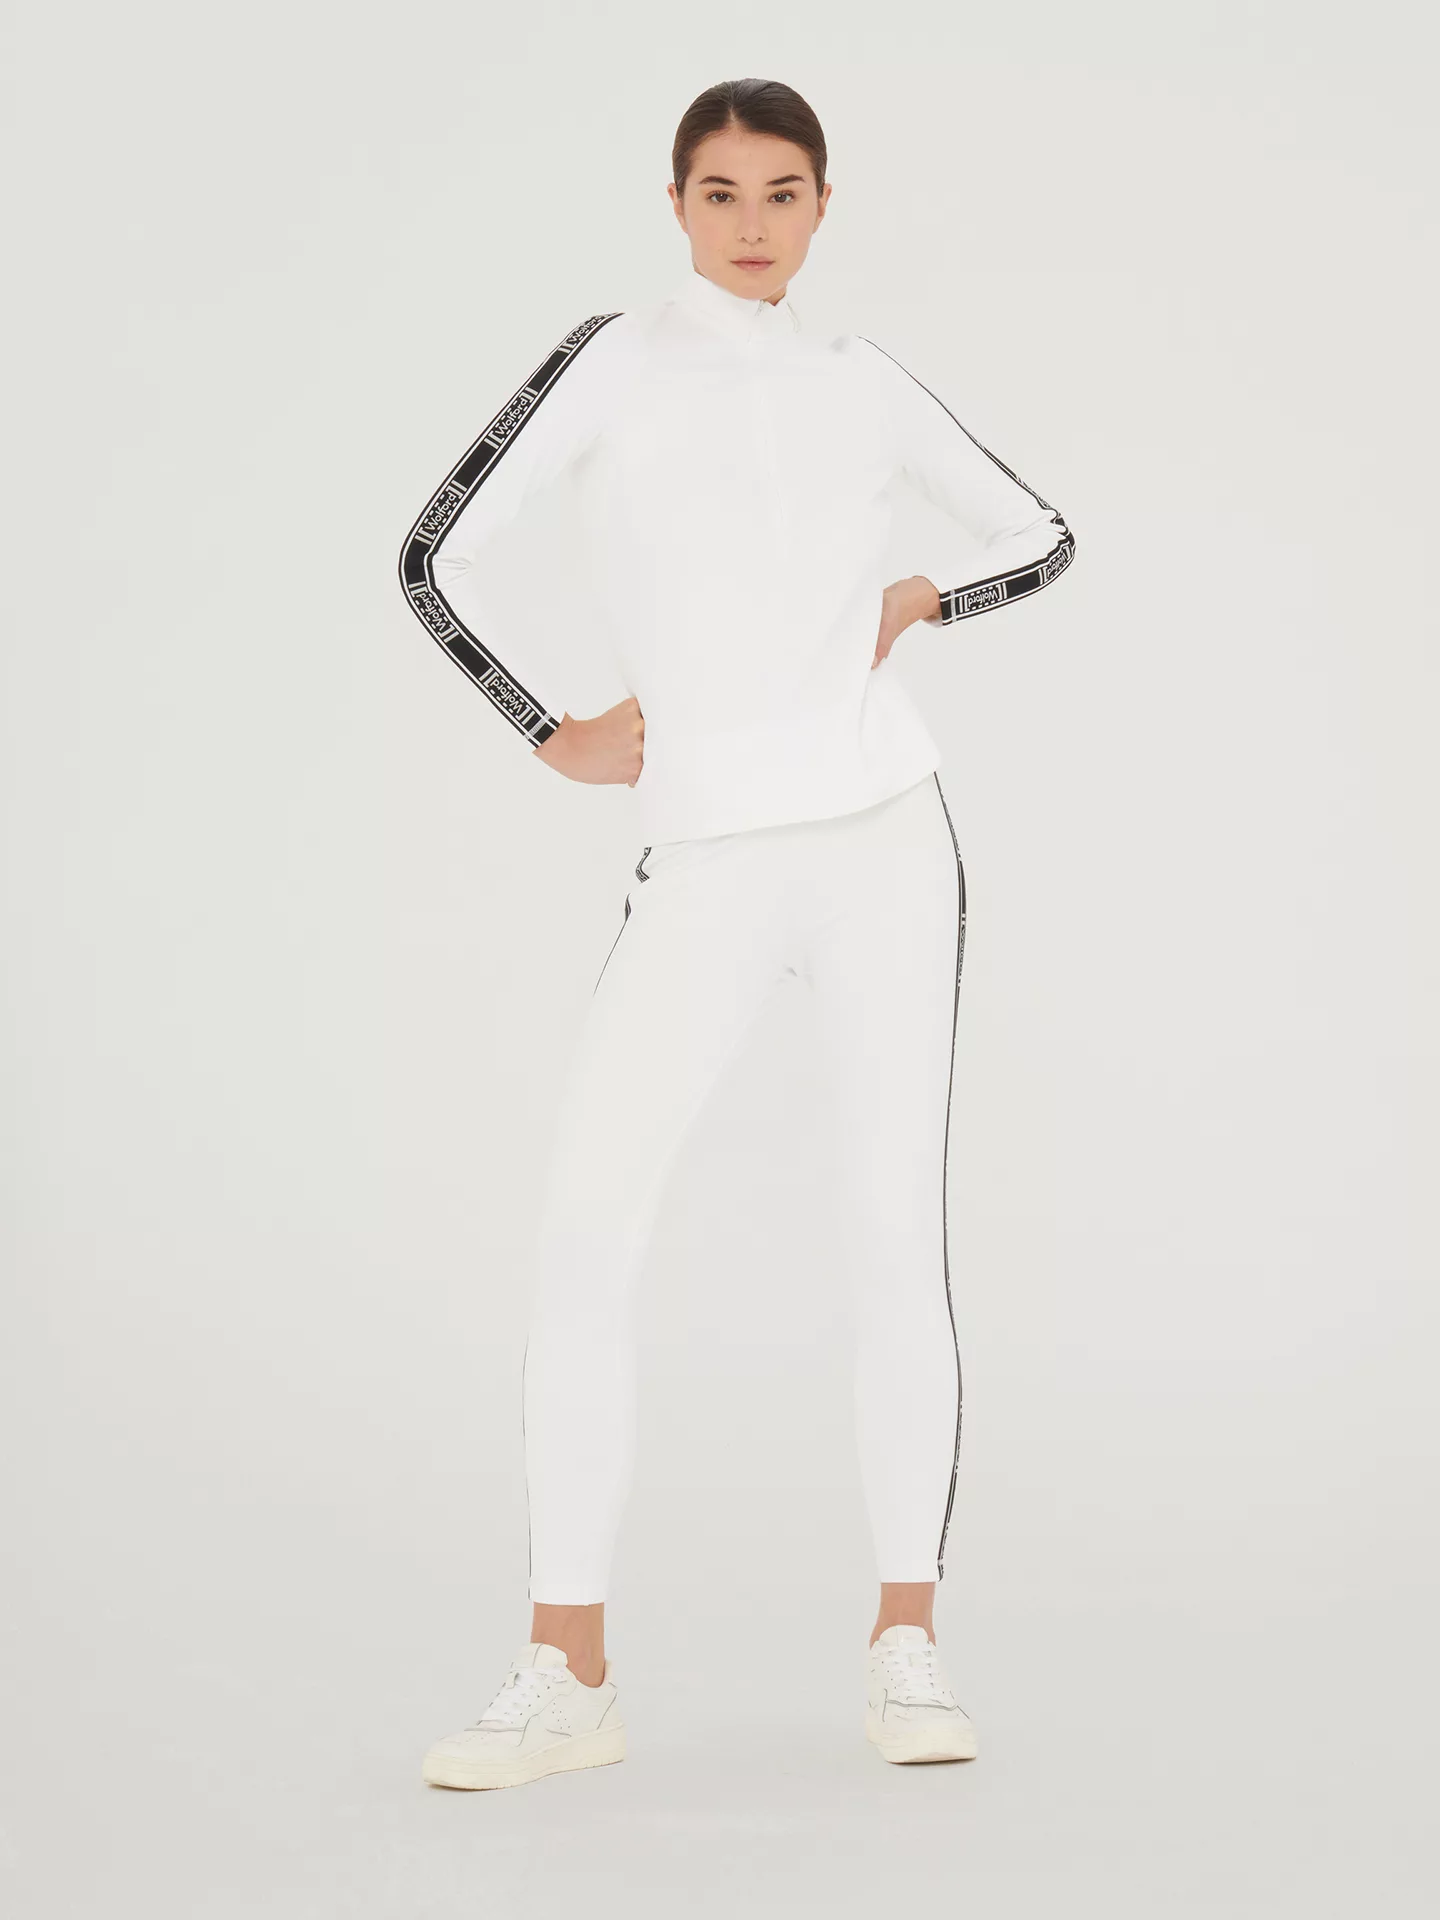 Wolford - Thermal Top Long Sleeves, Frau, white, Größe: M günstig online kaufen